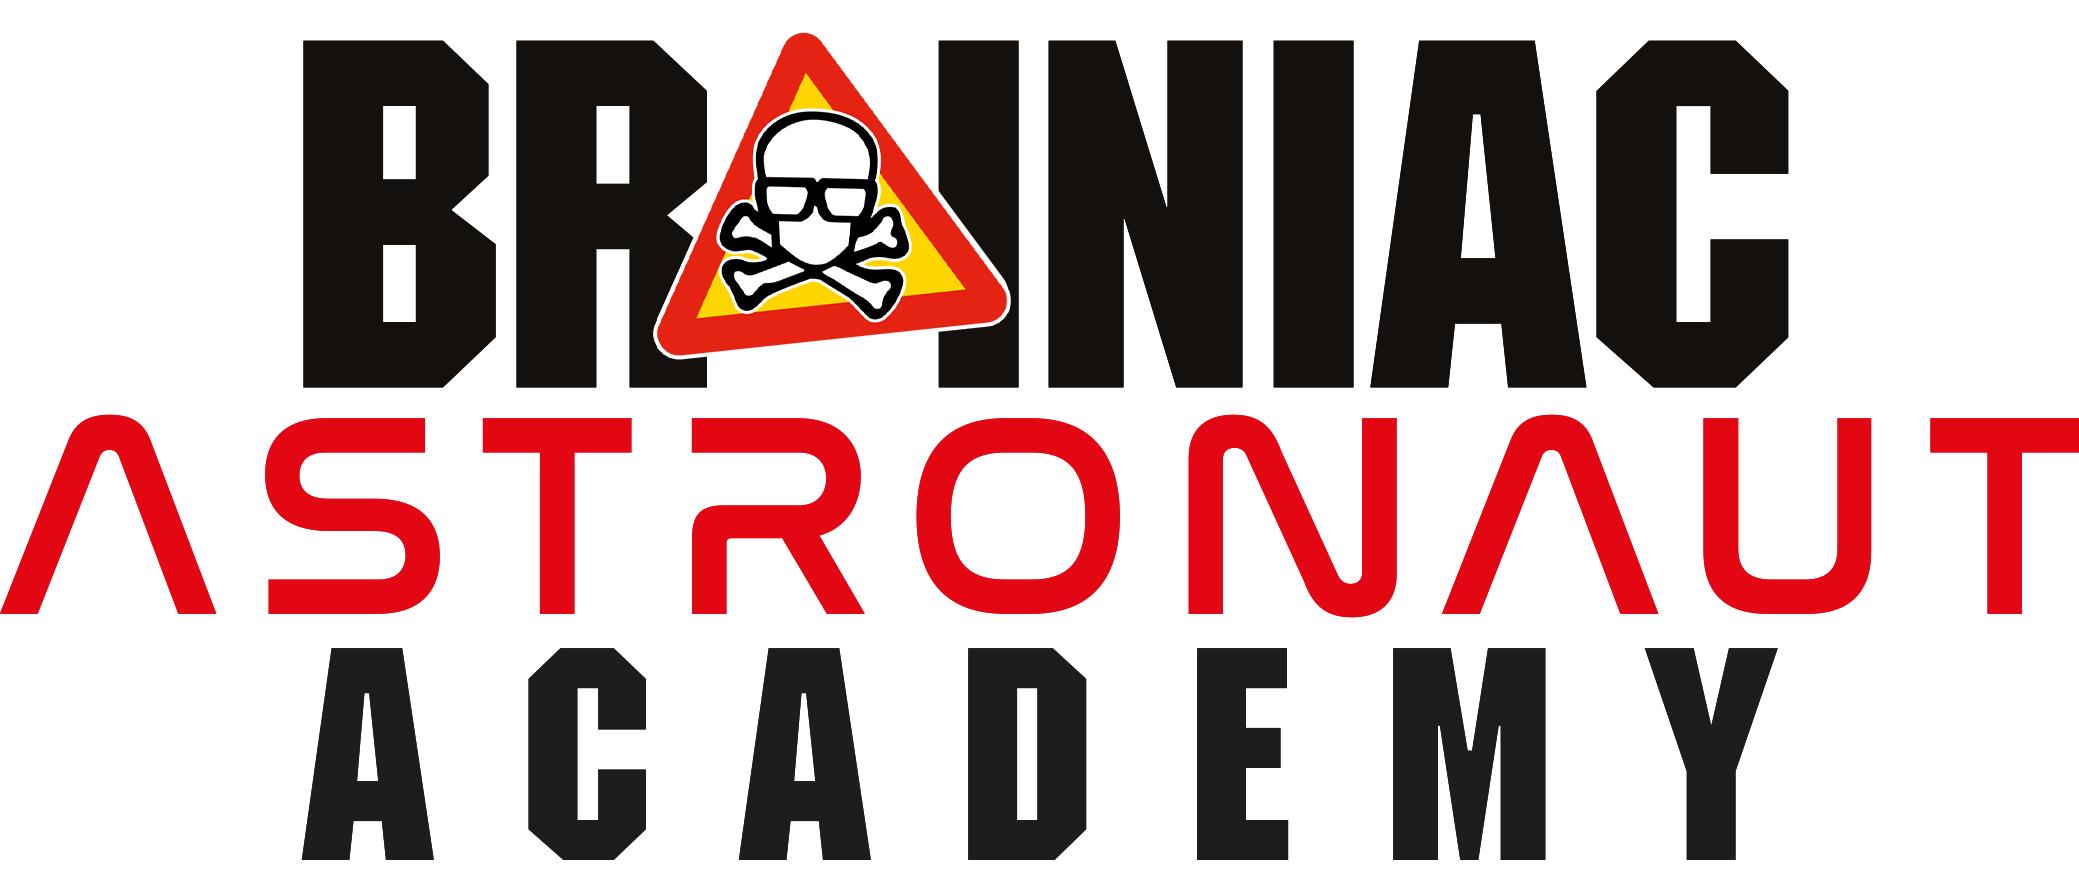 Brainiac Astronaut Academy